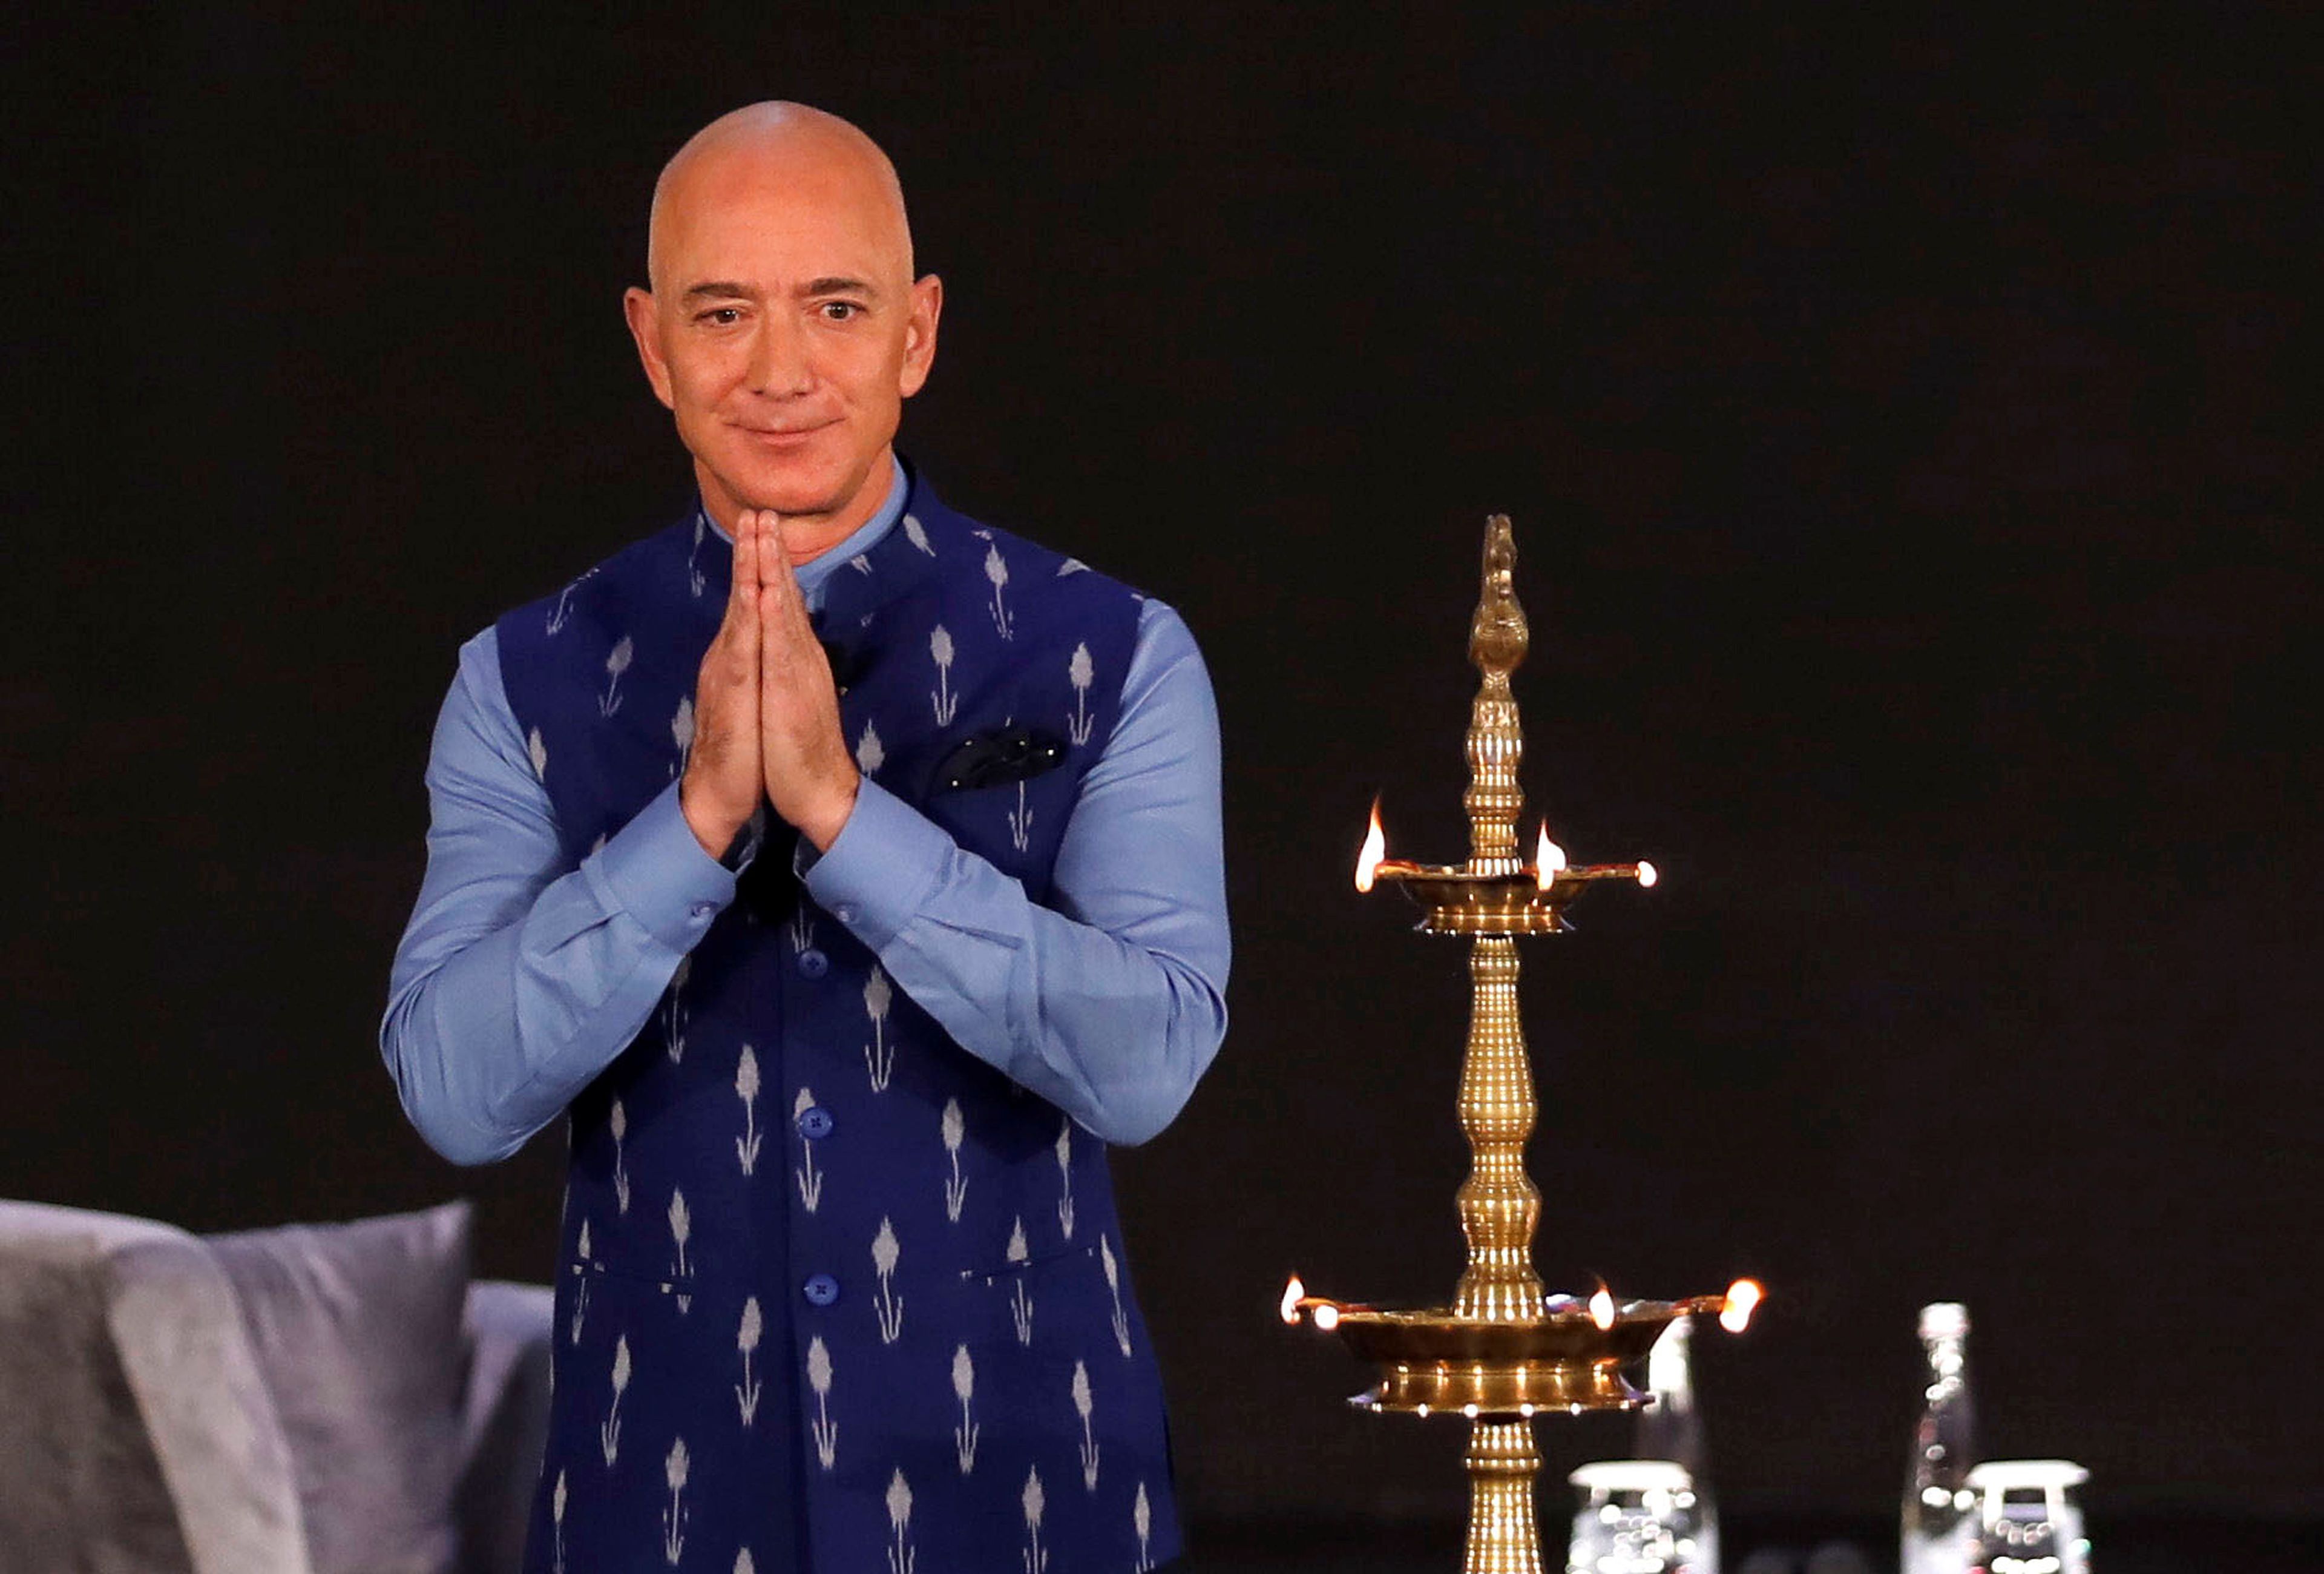 El fundador y CEO de Amazon, Jeff Bezos, en un evento en Nueva Delhi, India.